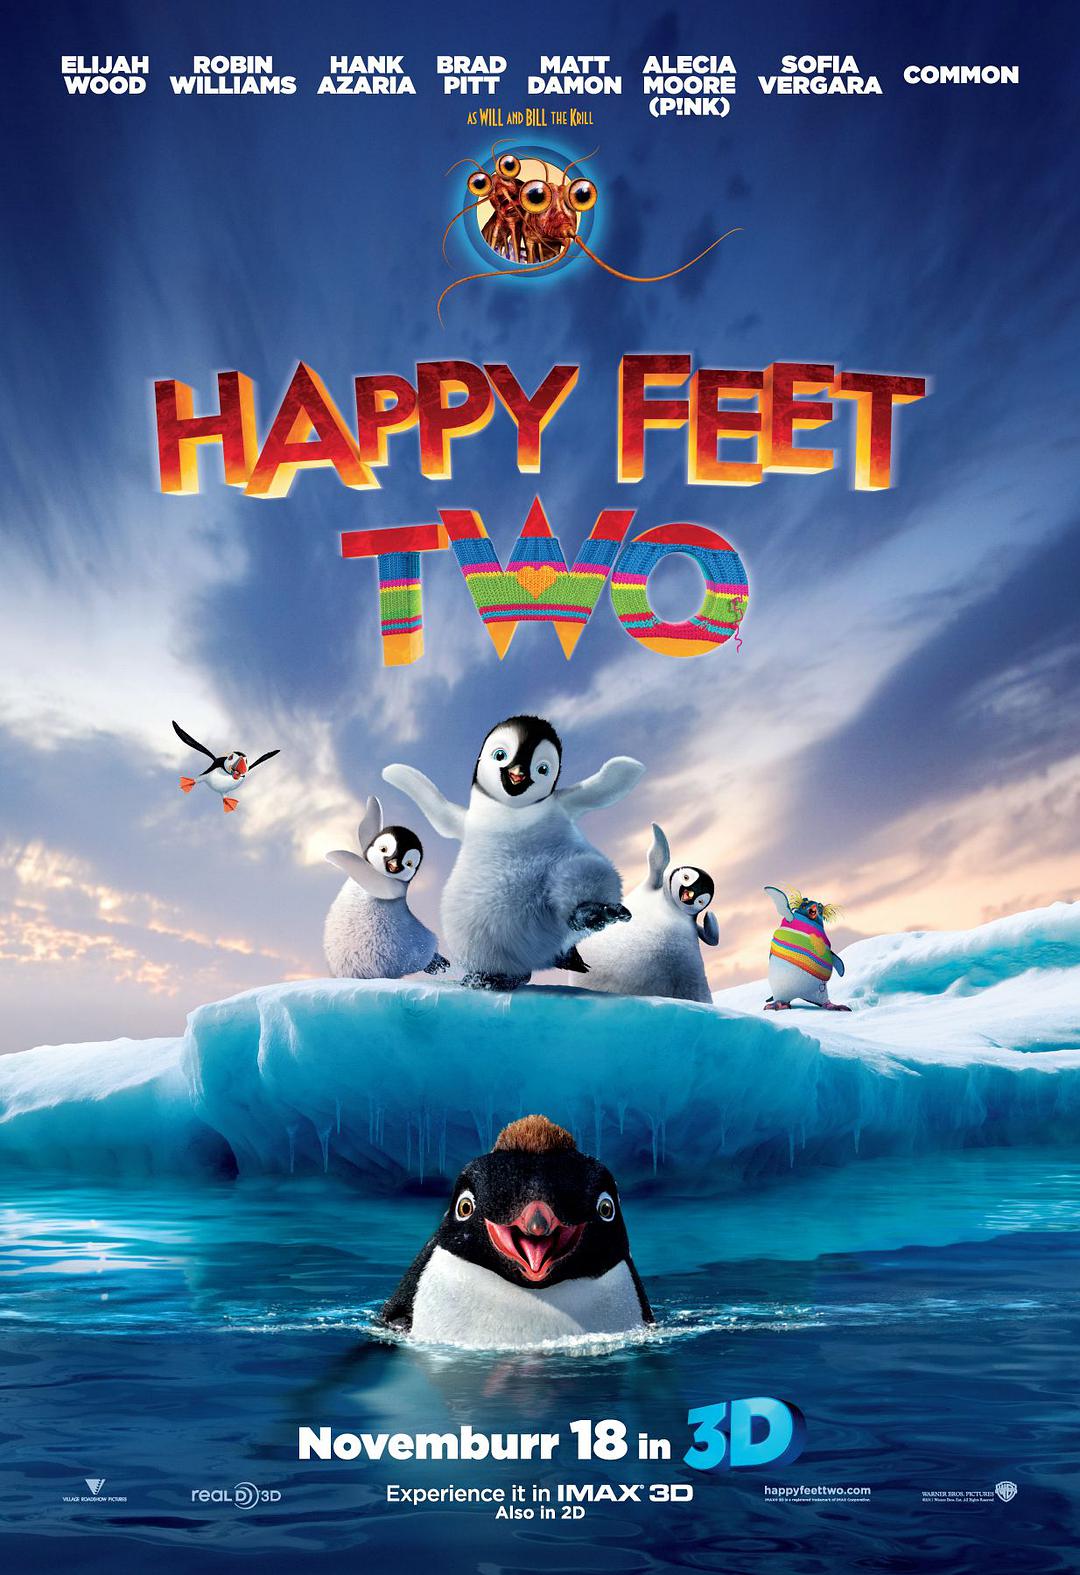 快乐的大脚2 3D蓝光原盘下载+高清MKV版/3D 踢哒小企鹅2(港) / 快乐脚2(台) / 欢乐大脚2 2011 Happy Feet Two 34.9G